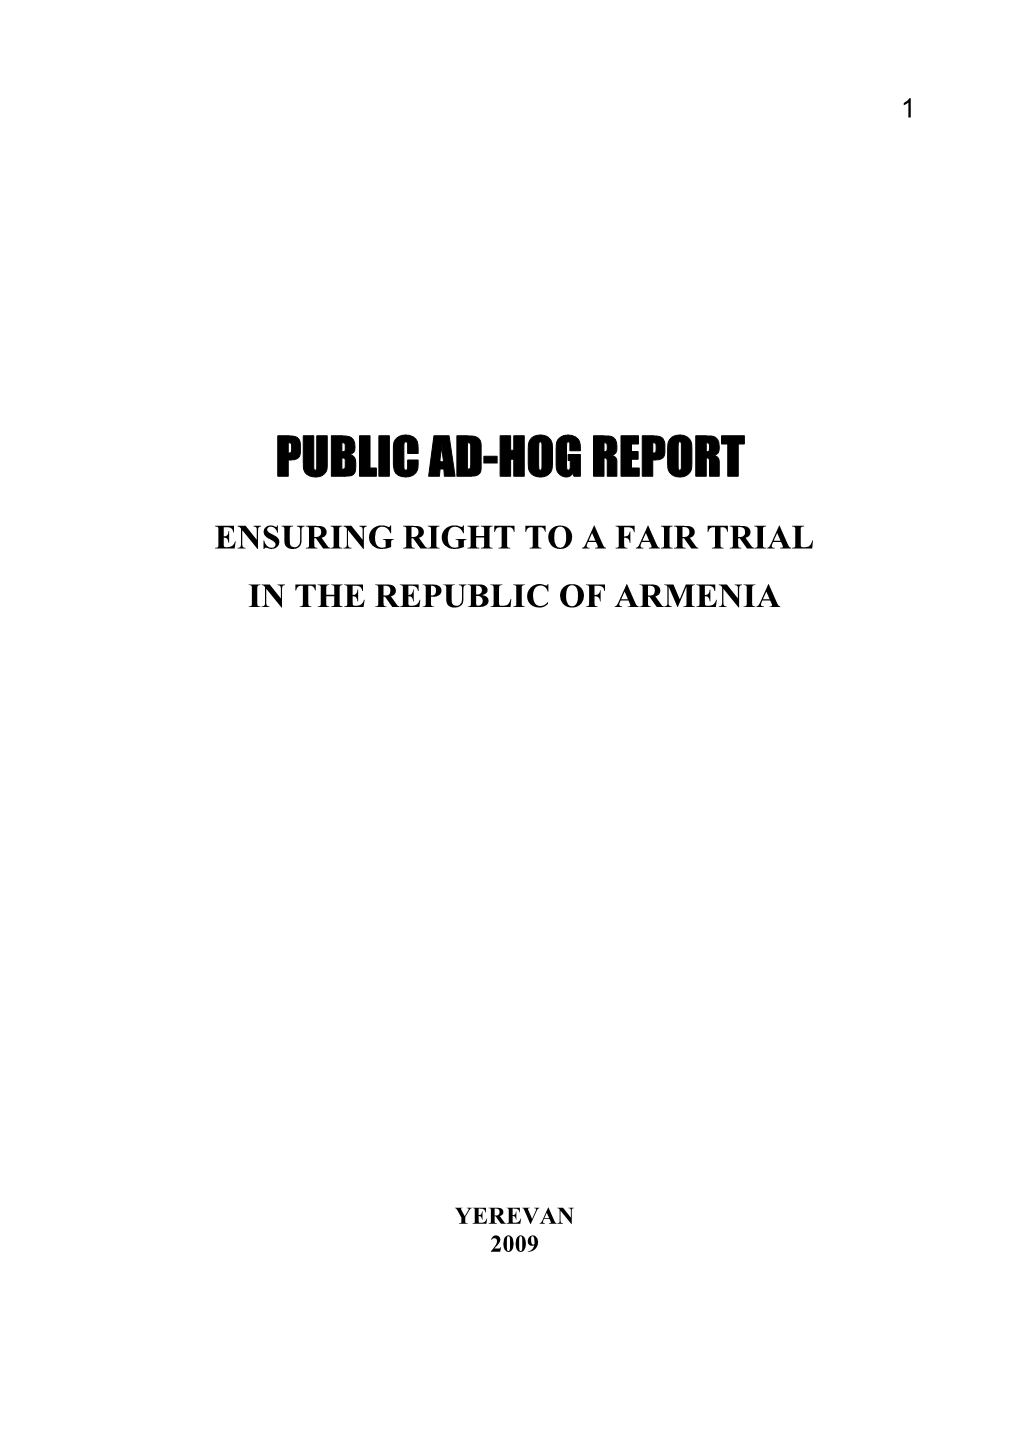 Ad Hoc Report in 2009